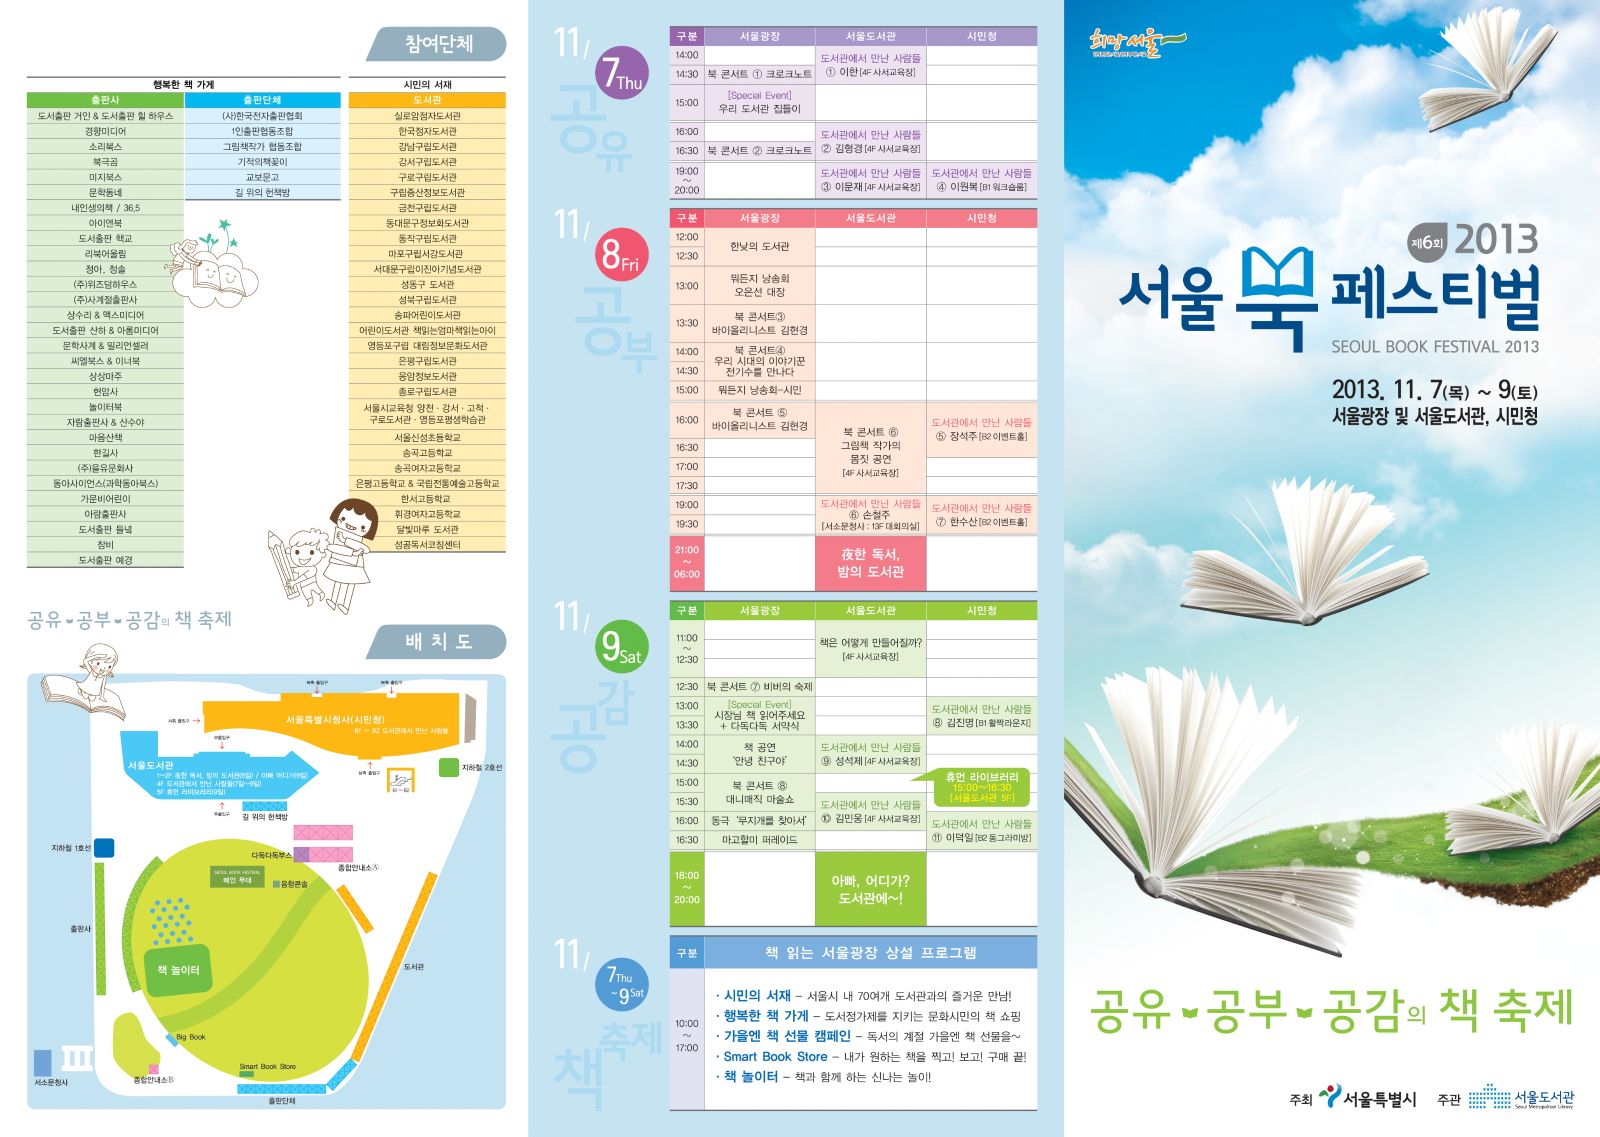 2013 서울 북 페스티벌 리플렛 안내  포스터